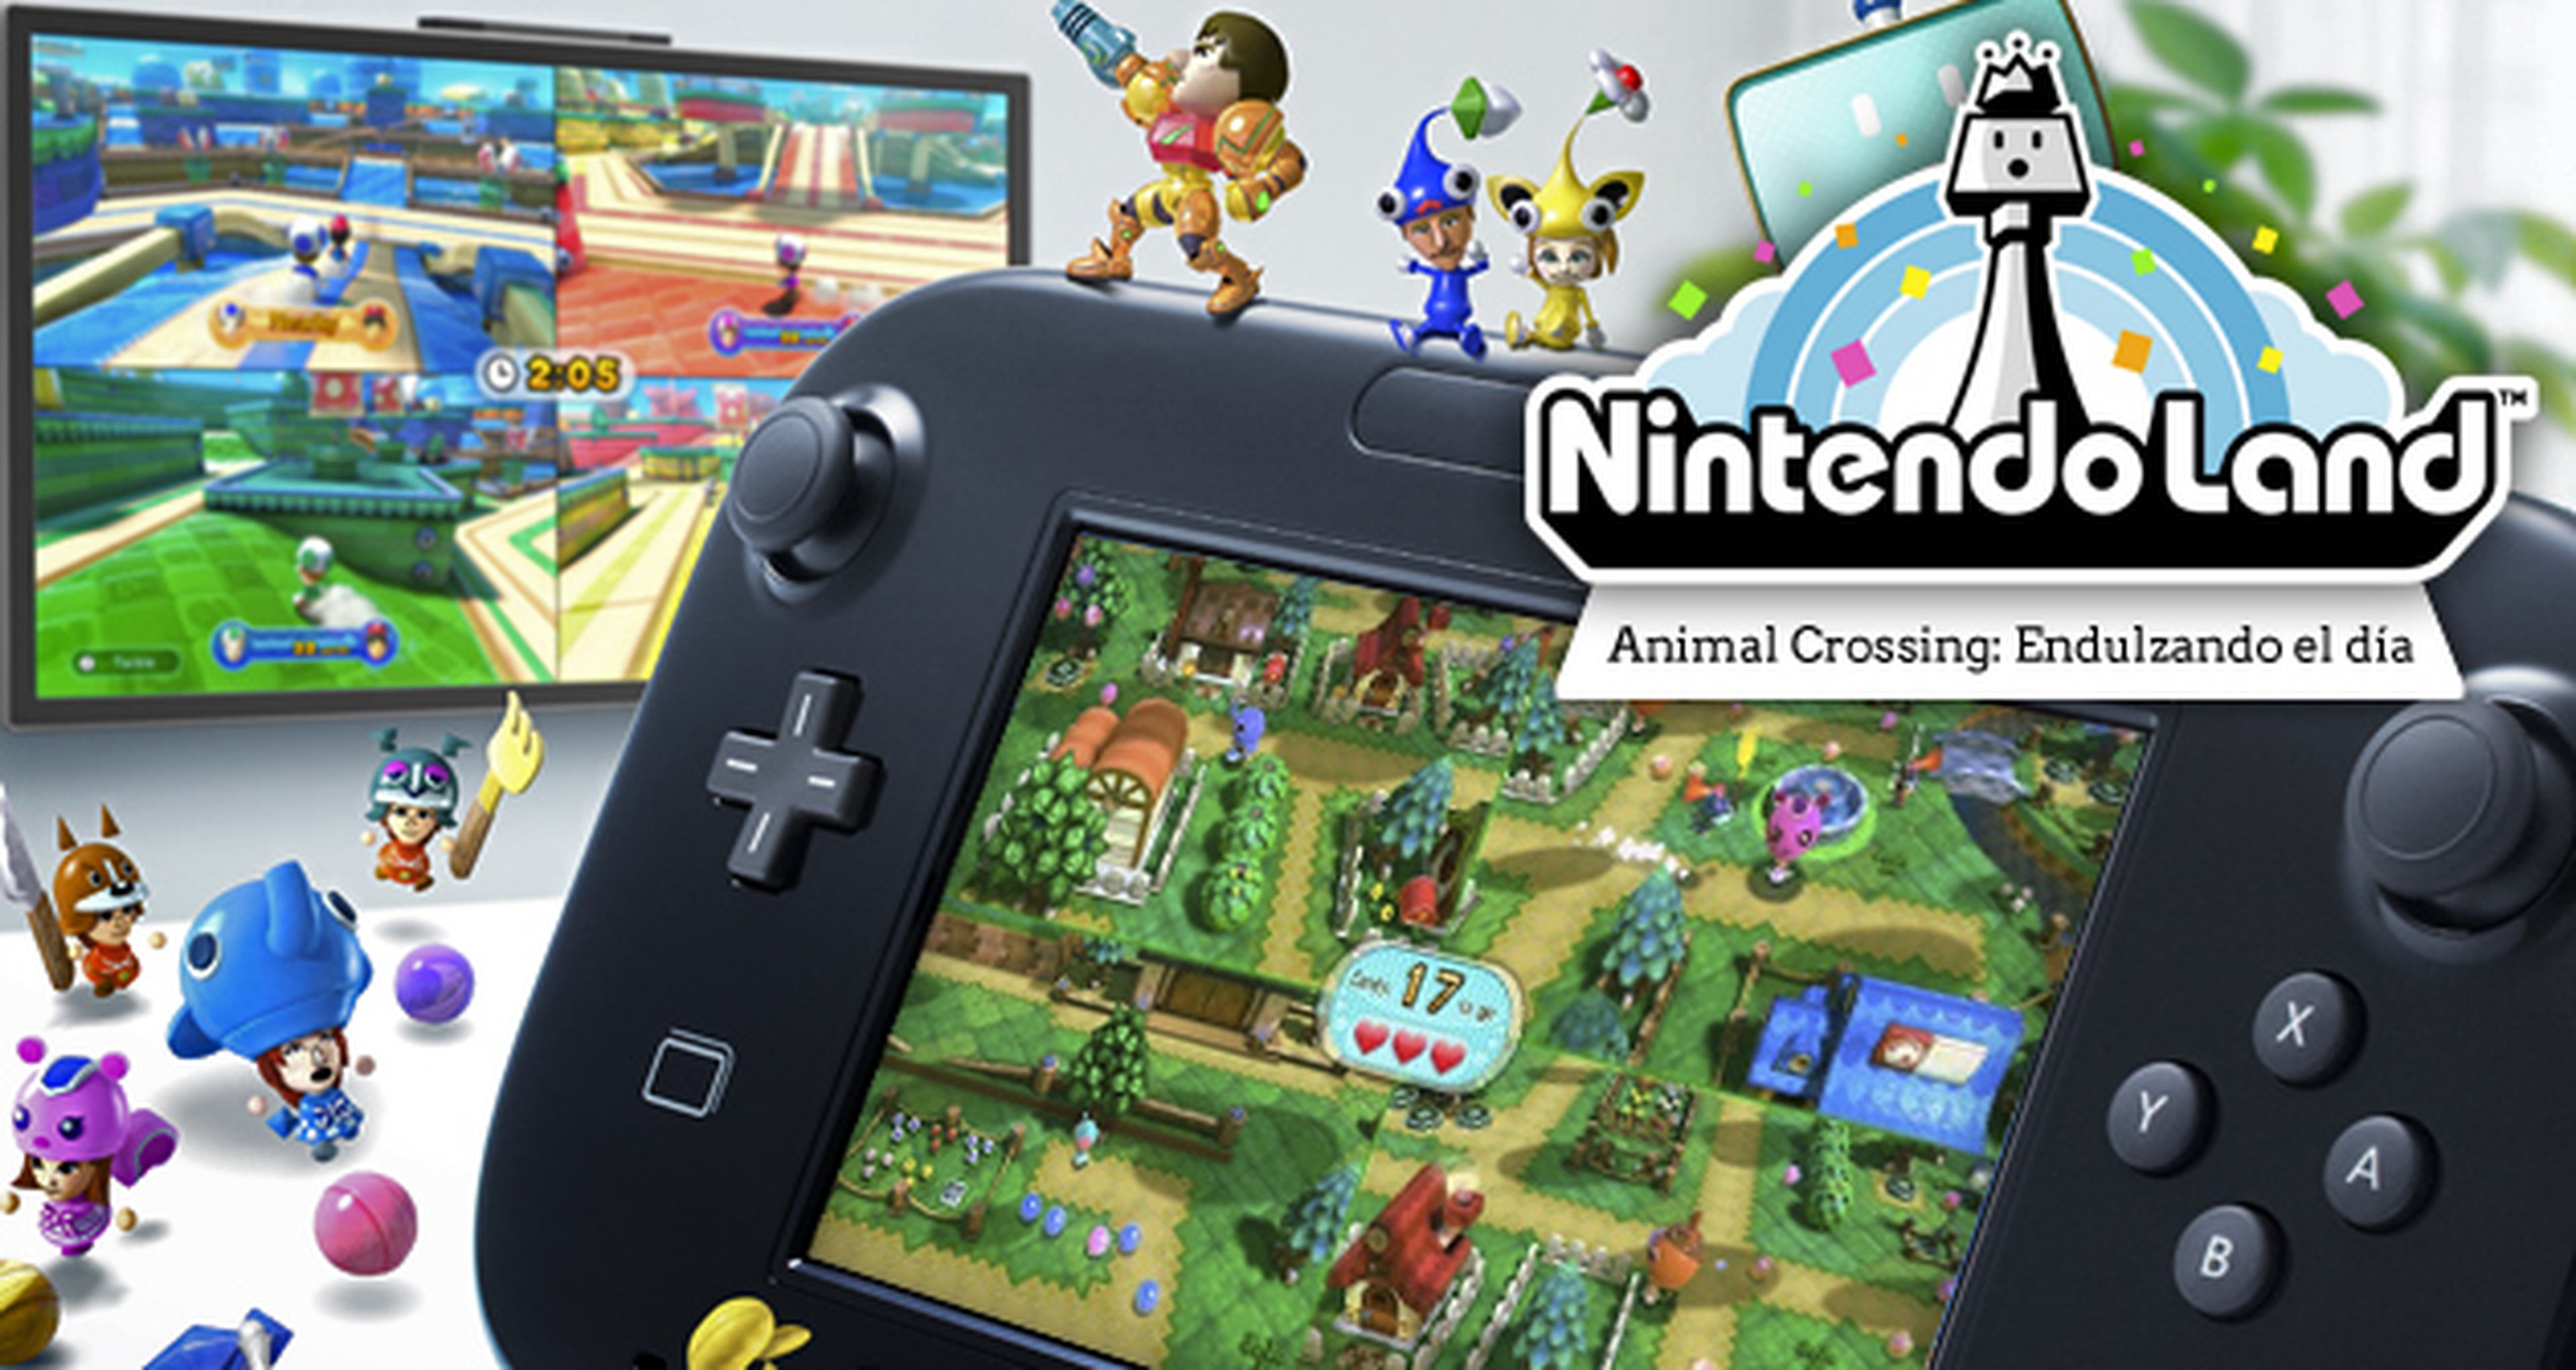 N. Land: Animal Crossing Endulzando el día